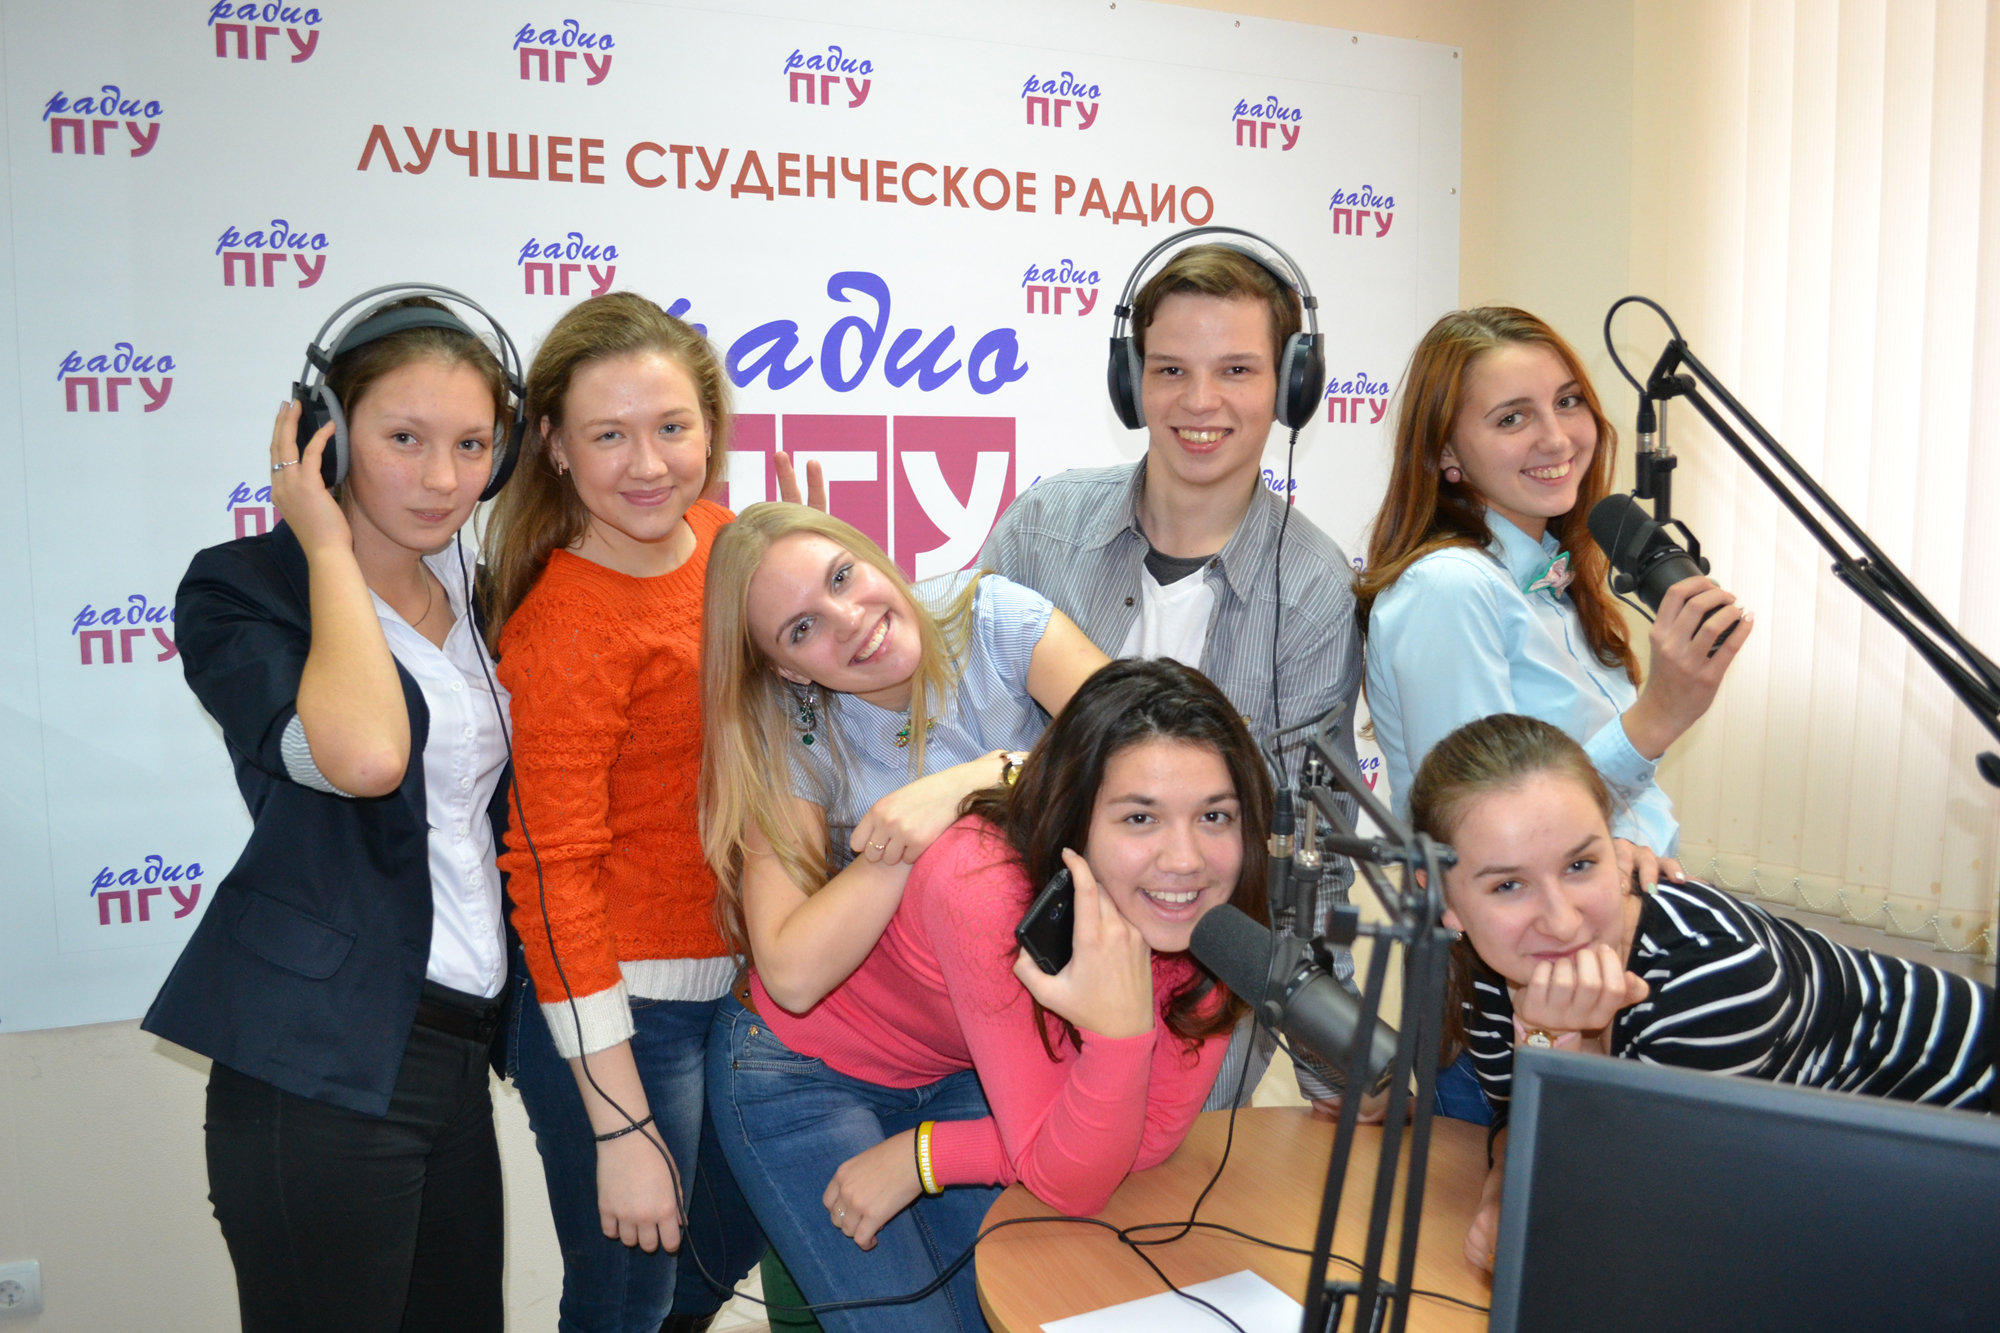 Студенческое Радио ПГУ : Работа на радио это огромное открытие. fnr.ru. 